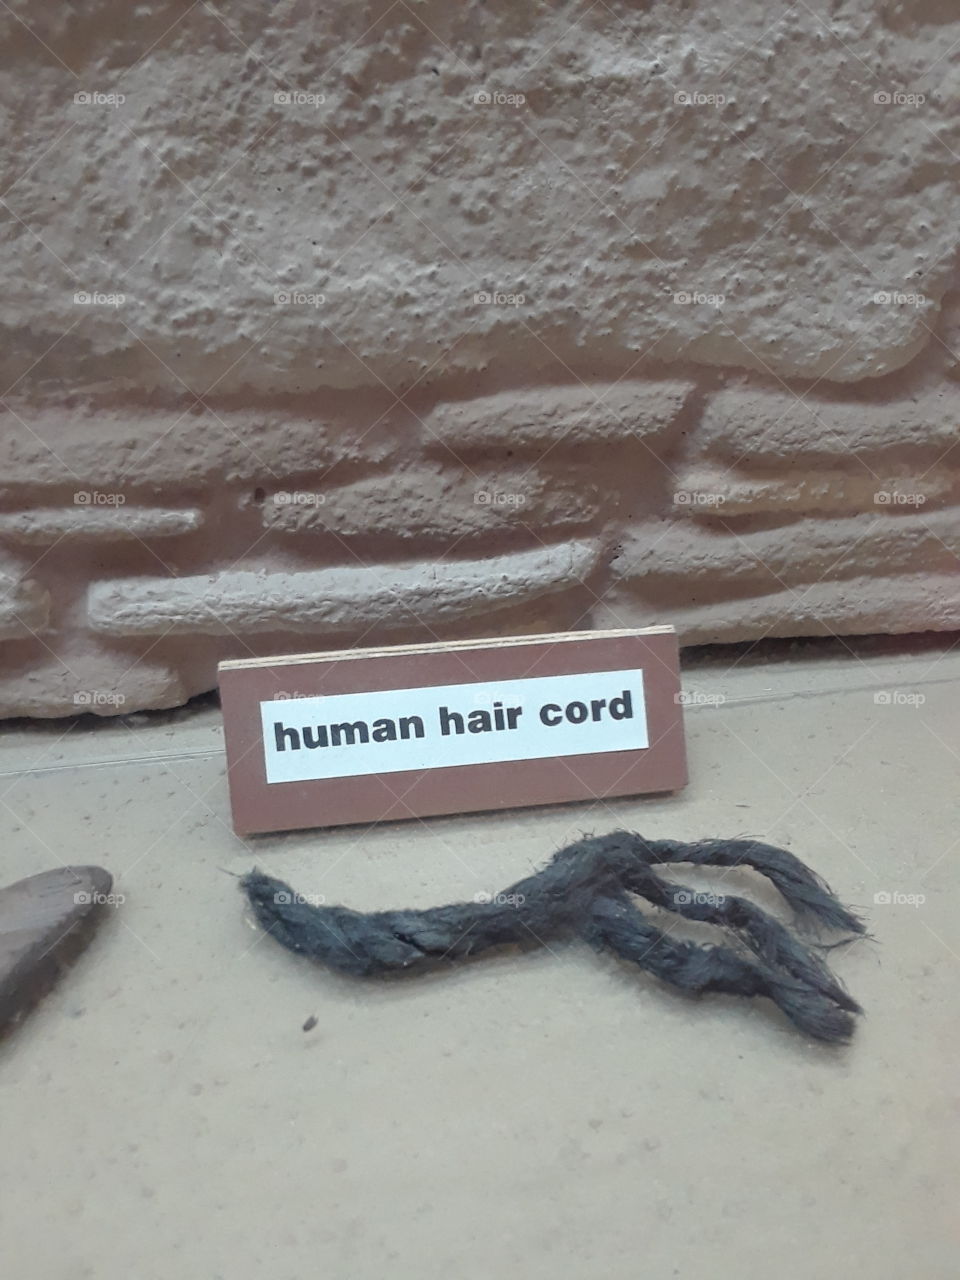 Human Hair Cord, Salmon Ruins